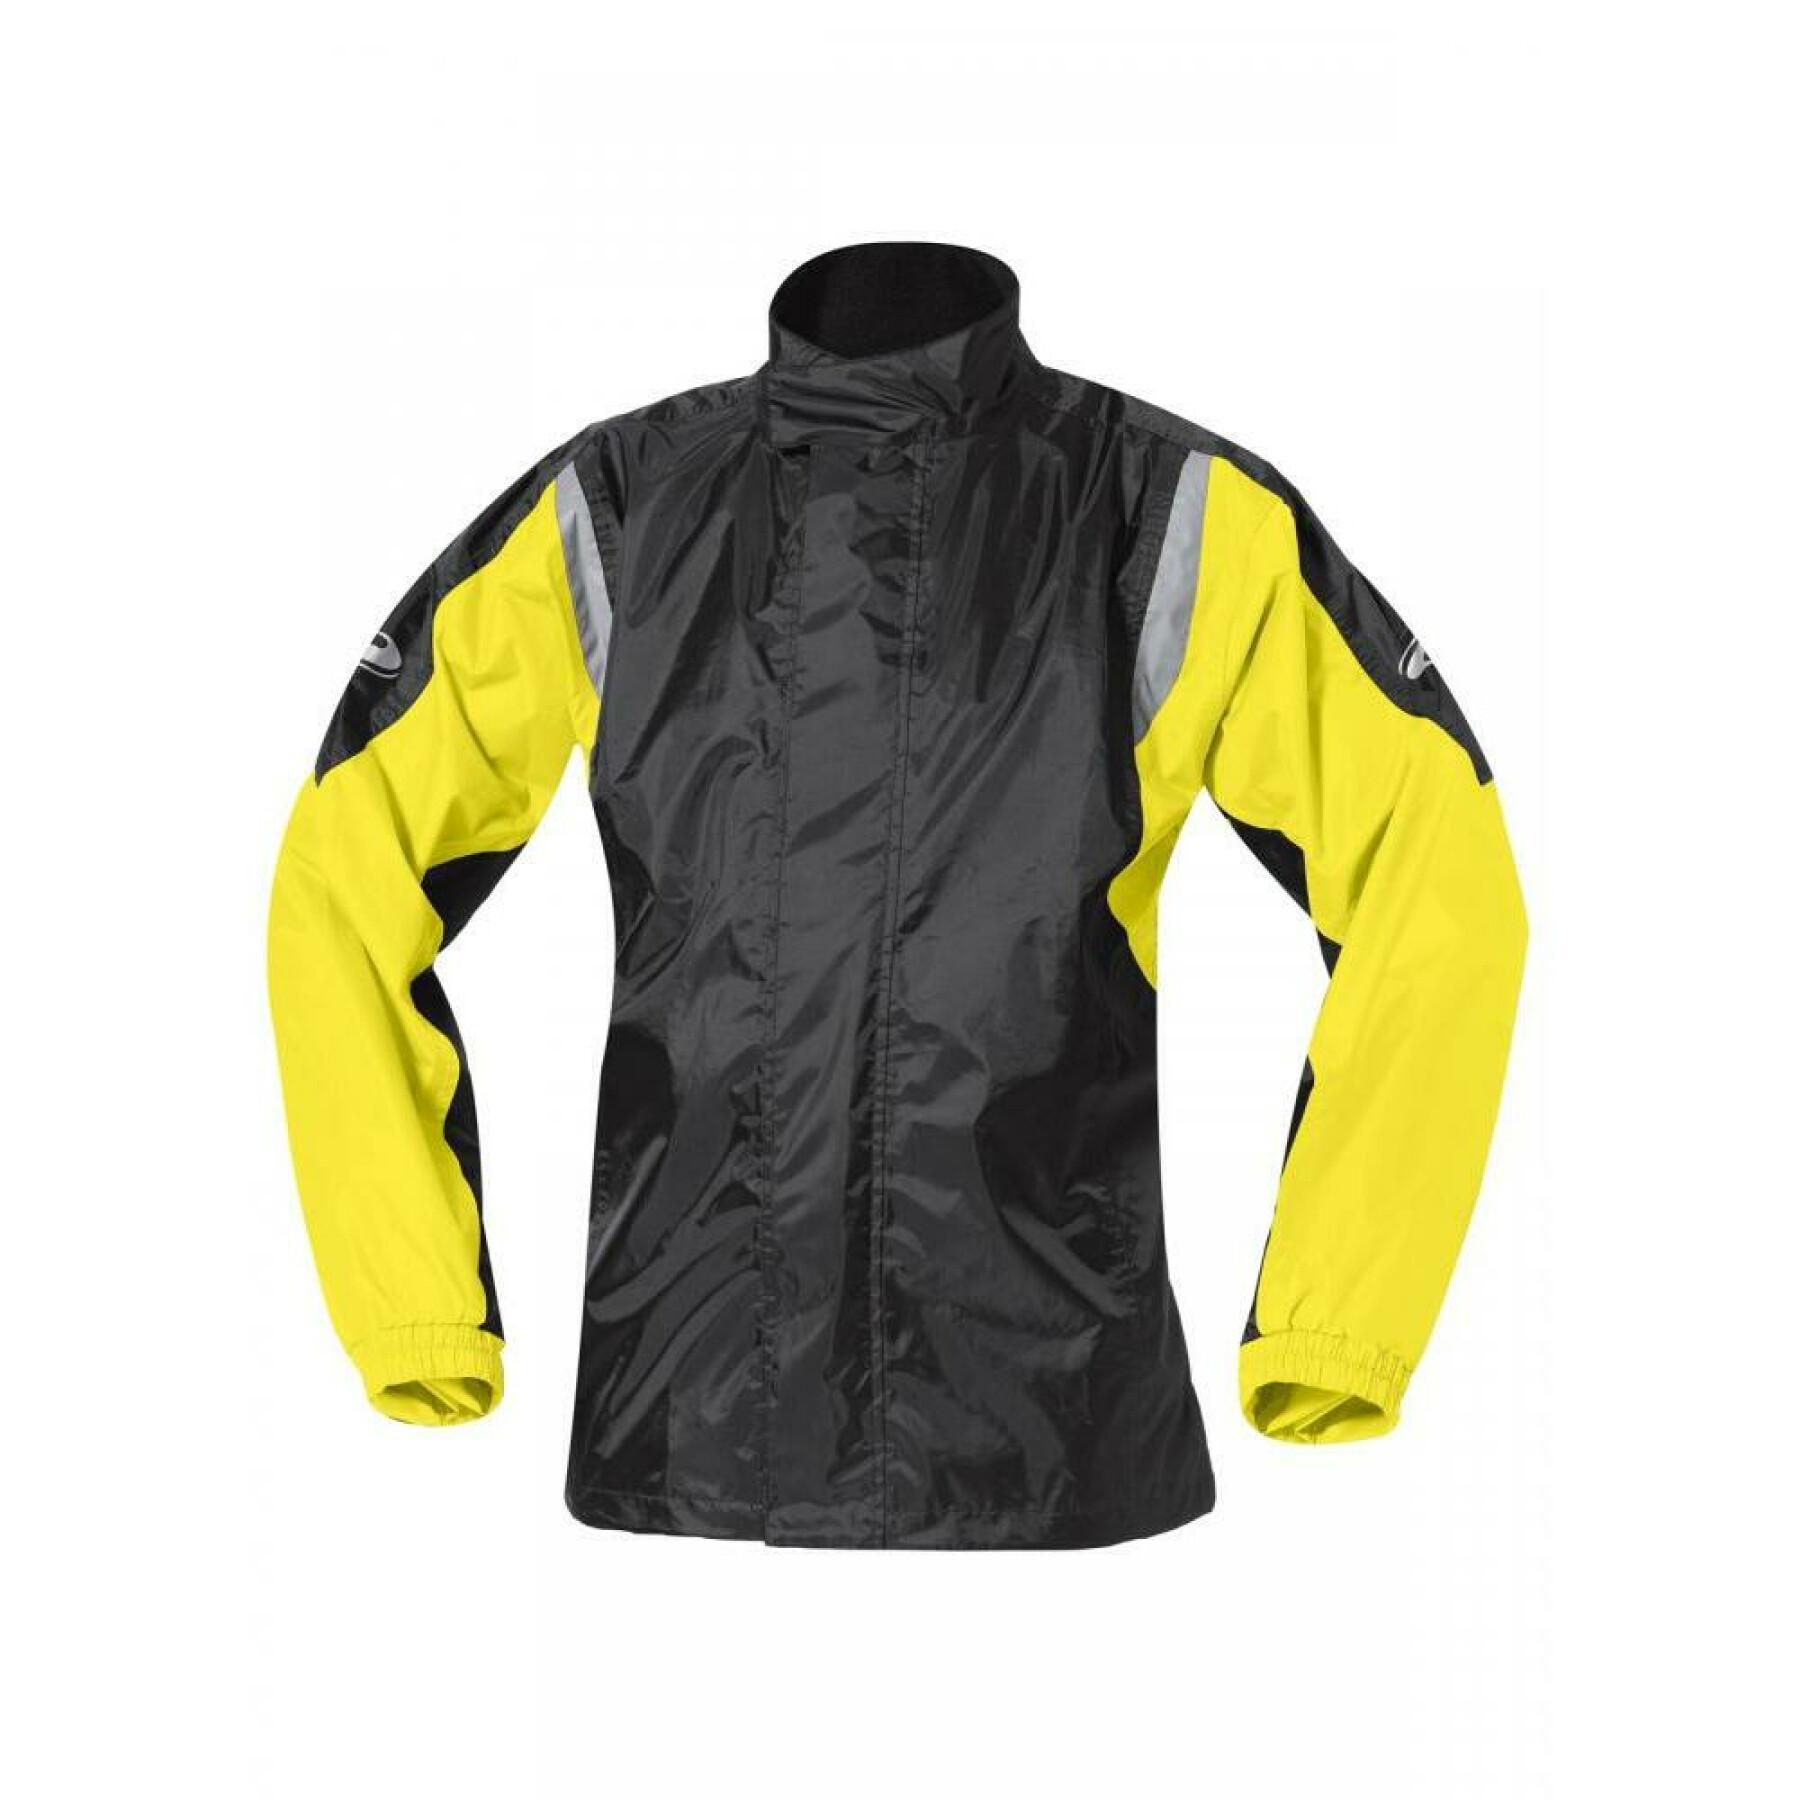 Motorcycle rain jacket Held mistral II